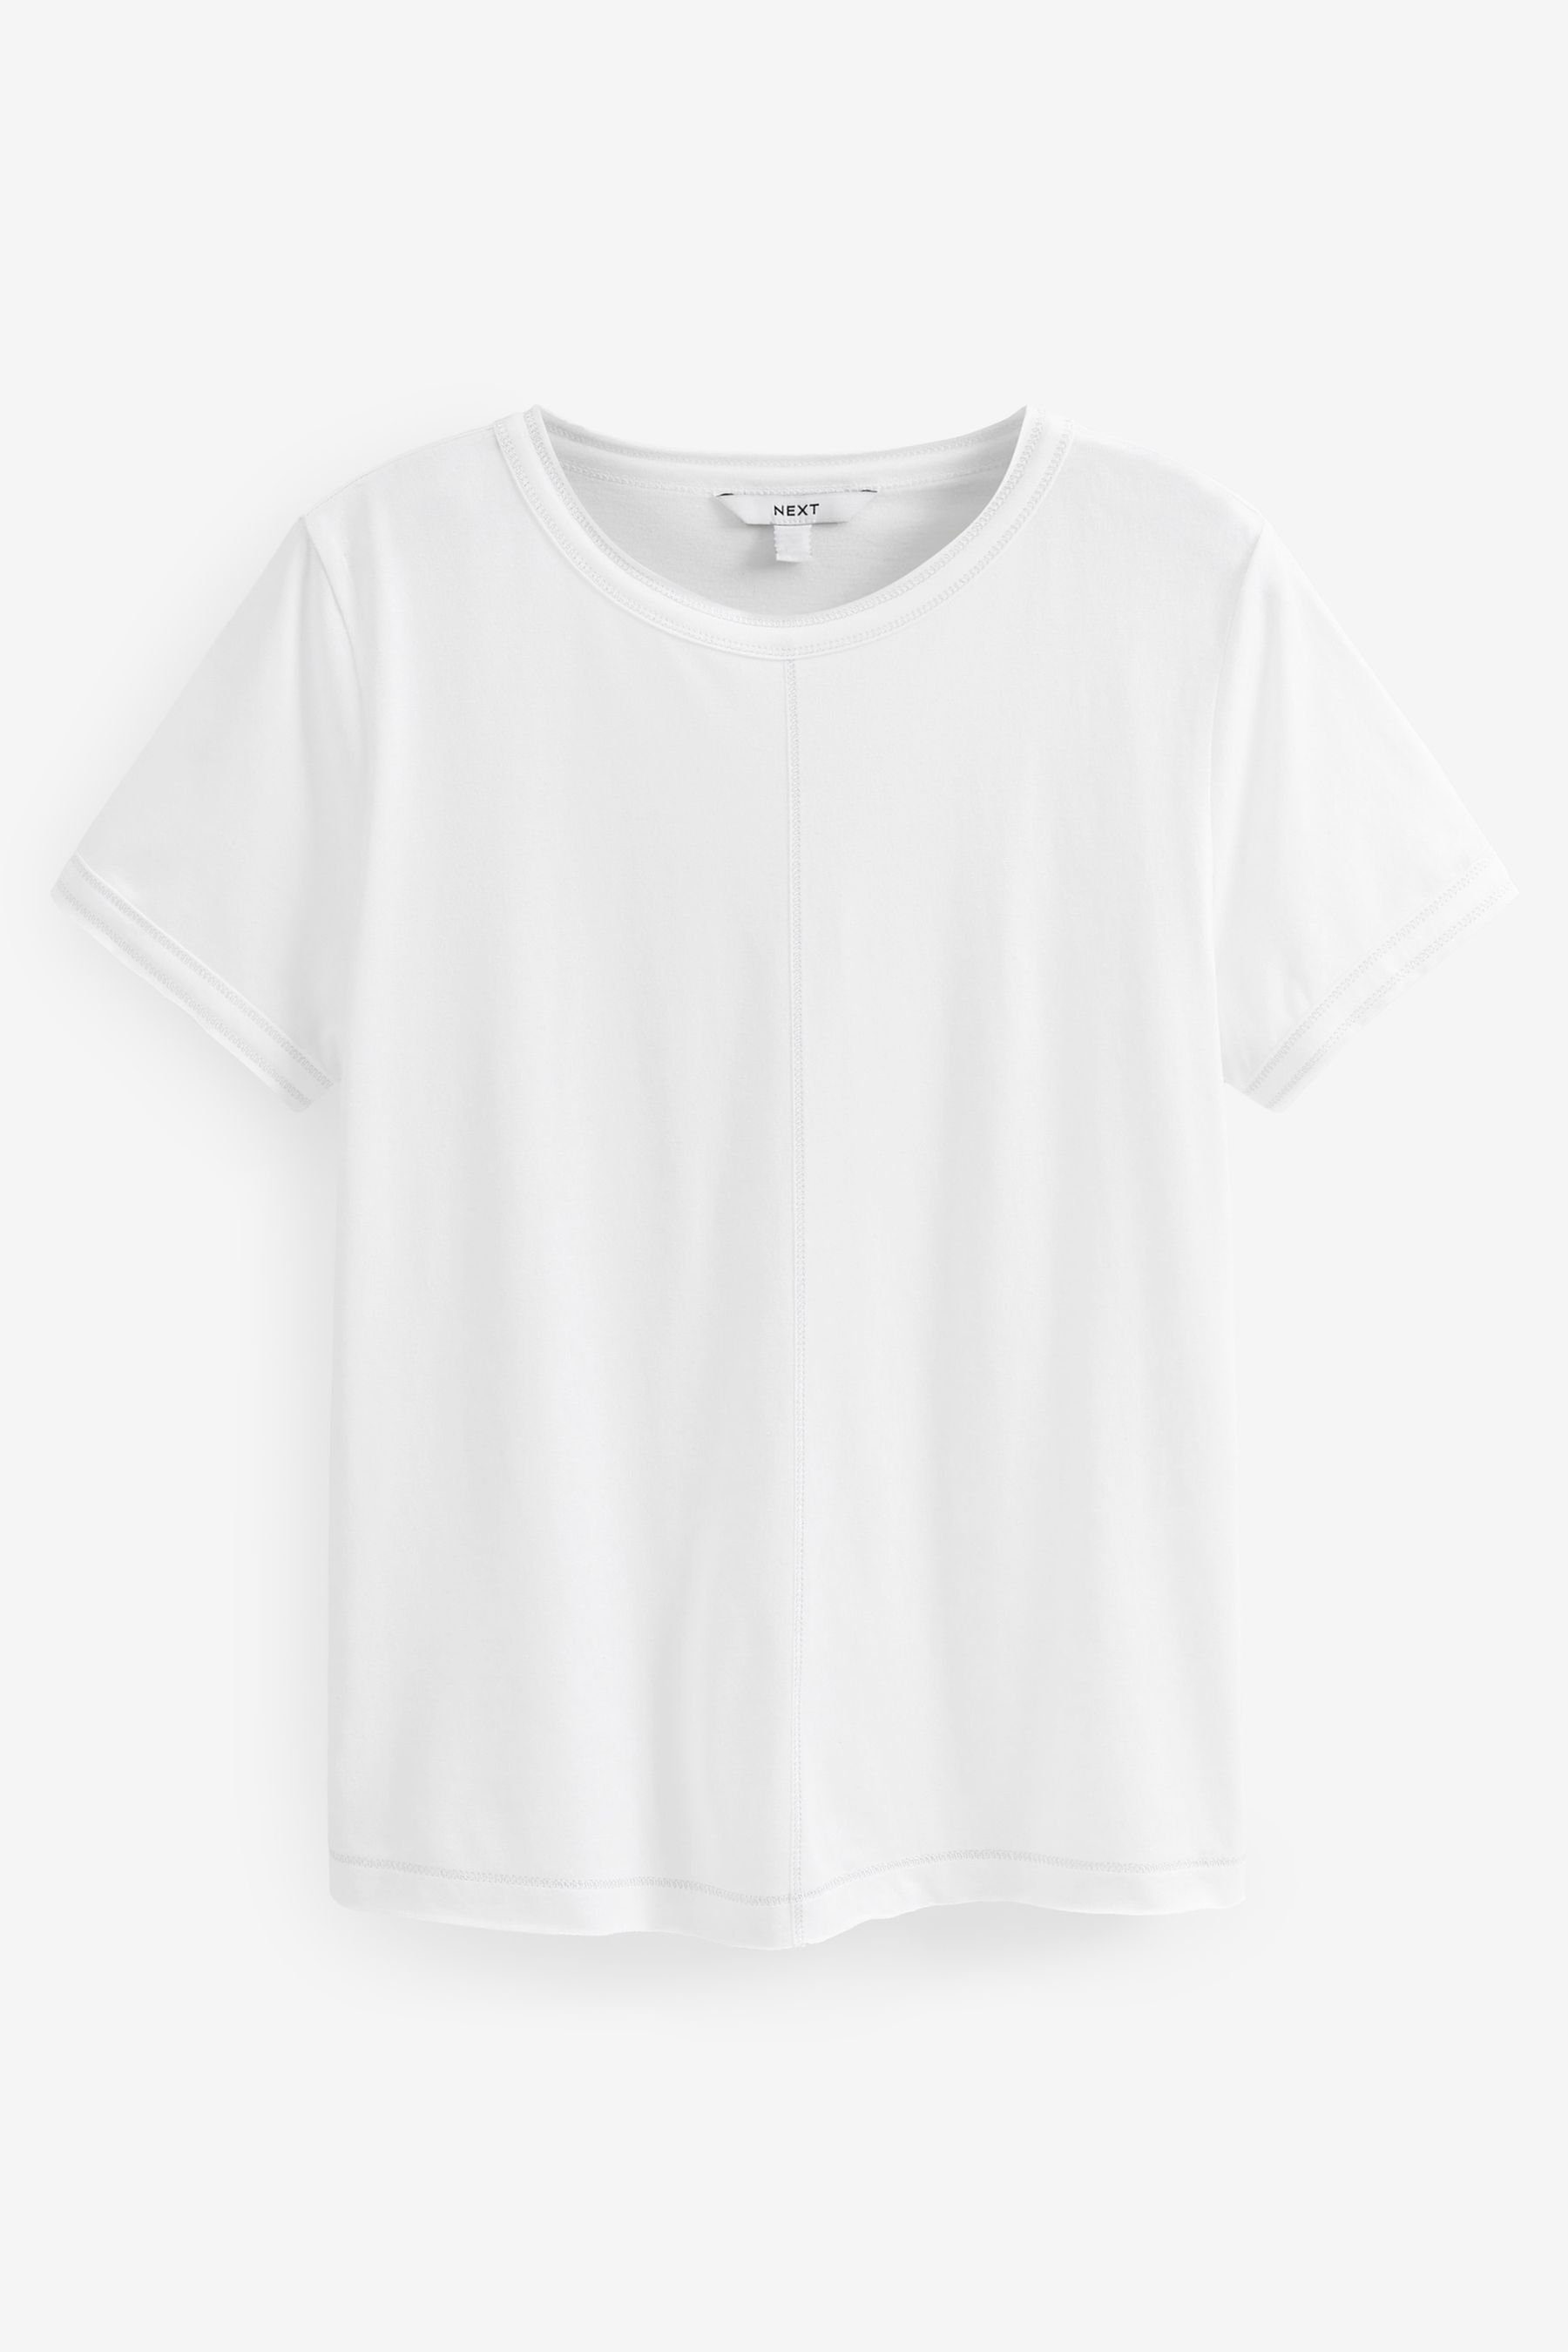 Next T-Shirt T-Shirt mit Rundhalsausschnitt, unversäumtem Saum (1-tlg) White Sparkle Stitch